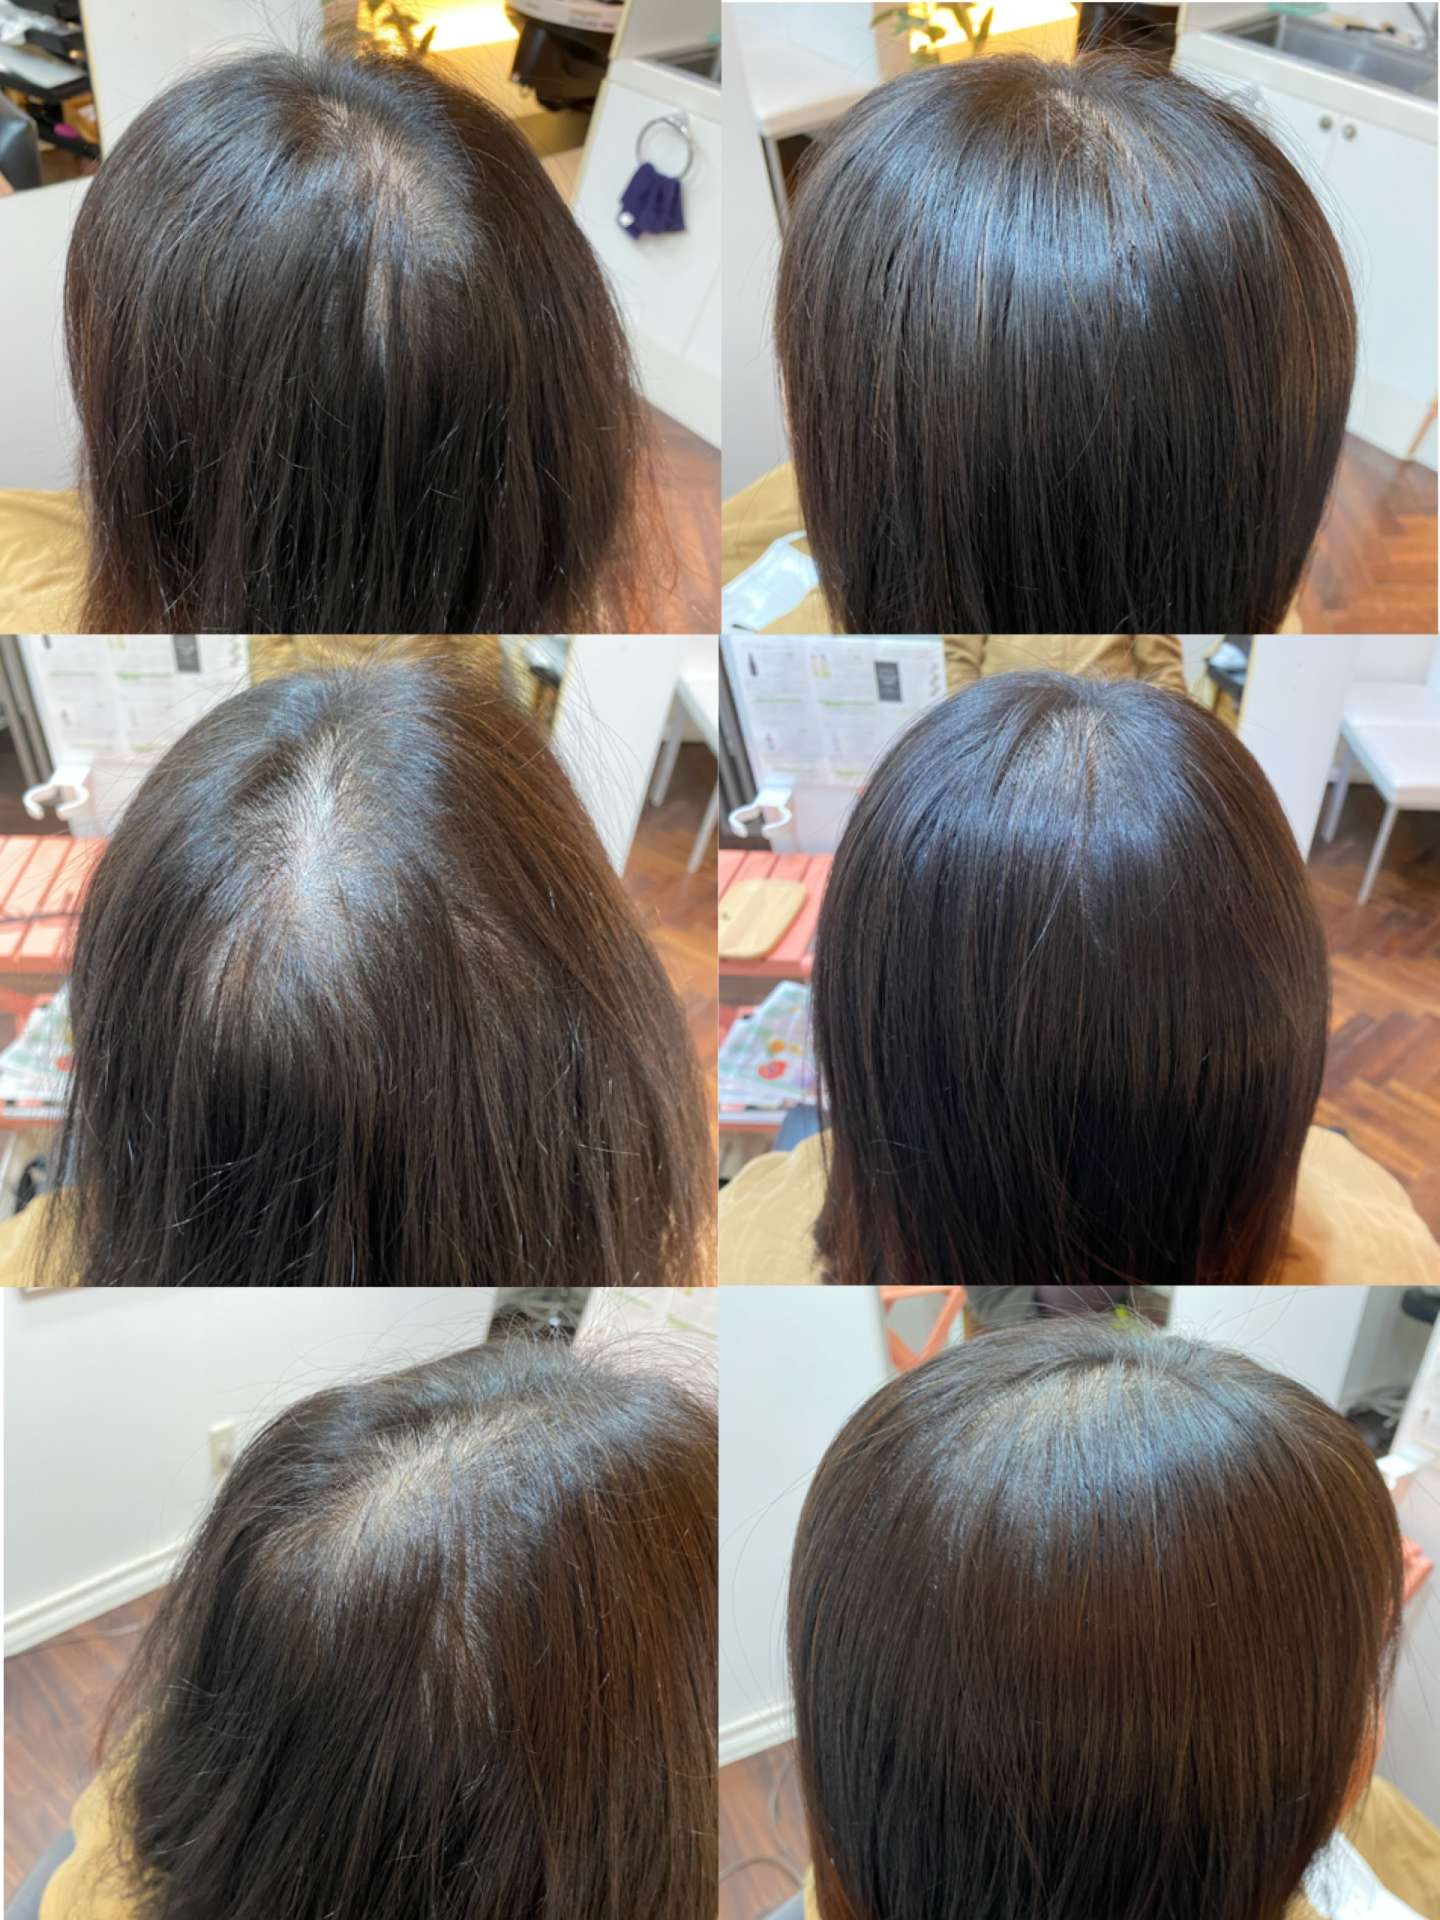 福井で髪の薄毛改善、育毛についてお悩みなら増毛エクステ専門店ふわりです。〜施術実例〜